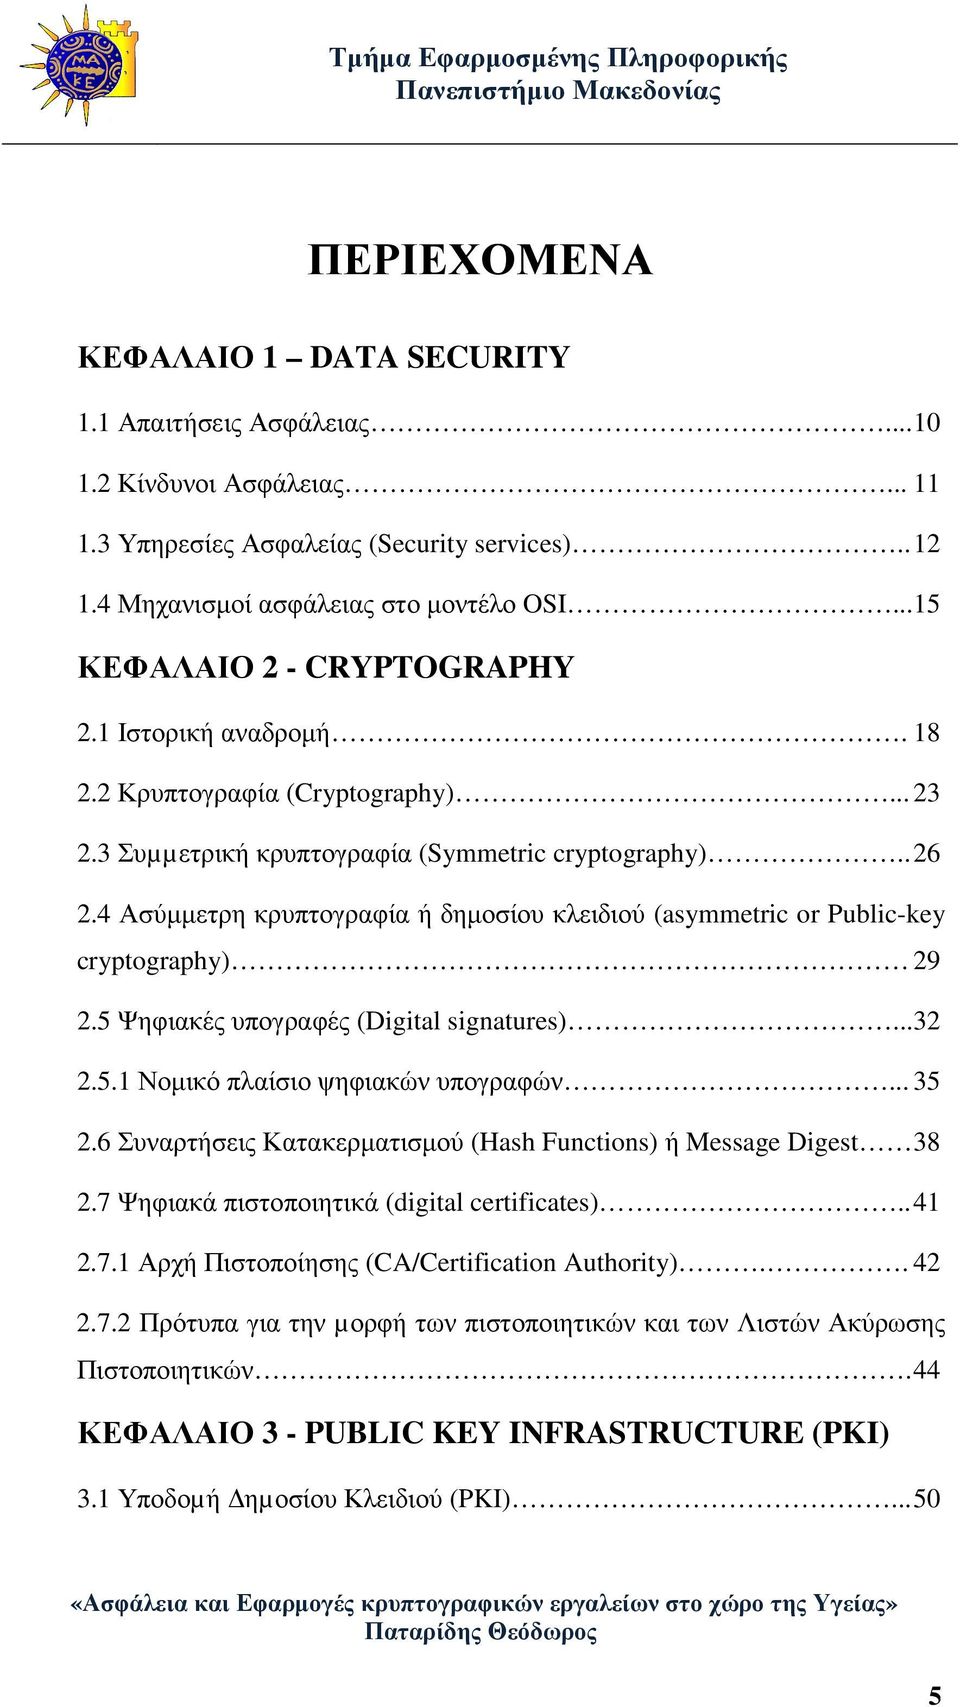 4 Ασύµµετρη κρυπτογραφία ή δηµοσίου κλειδιού (asymmetric or Public-key cryptography) 29 2.5 Ψηφιακές υπογραφές (Digital signatures)... 32 2.5.1 Νοµικό πλαίσιο ψηφιακών υπογραφών... 35 2.